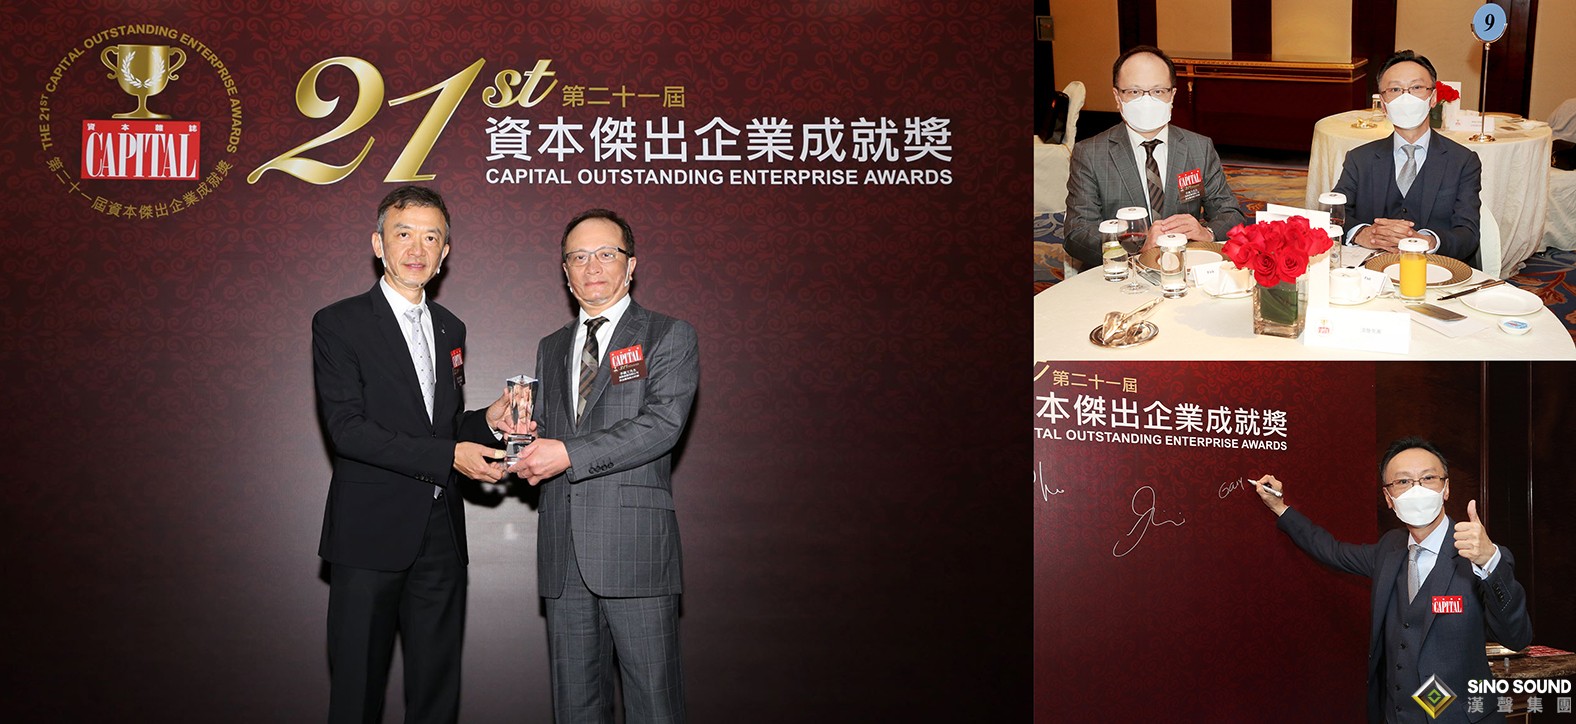 漢聲集團榮獲“第二十一屆資本杰出企業成就獎”